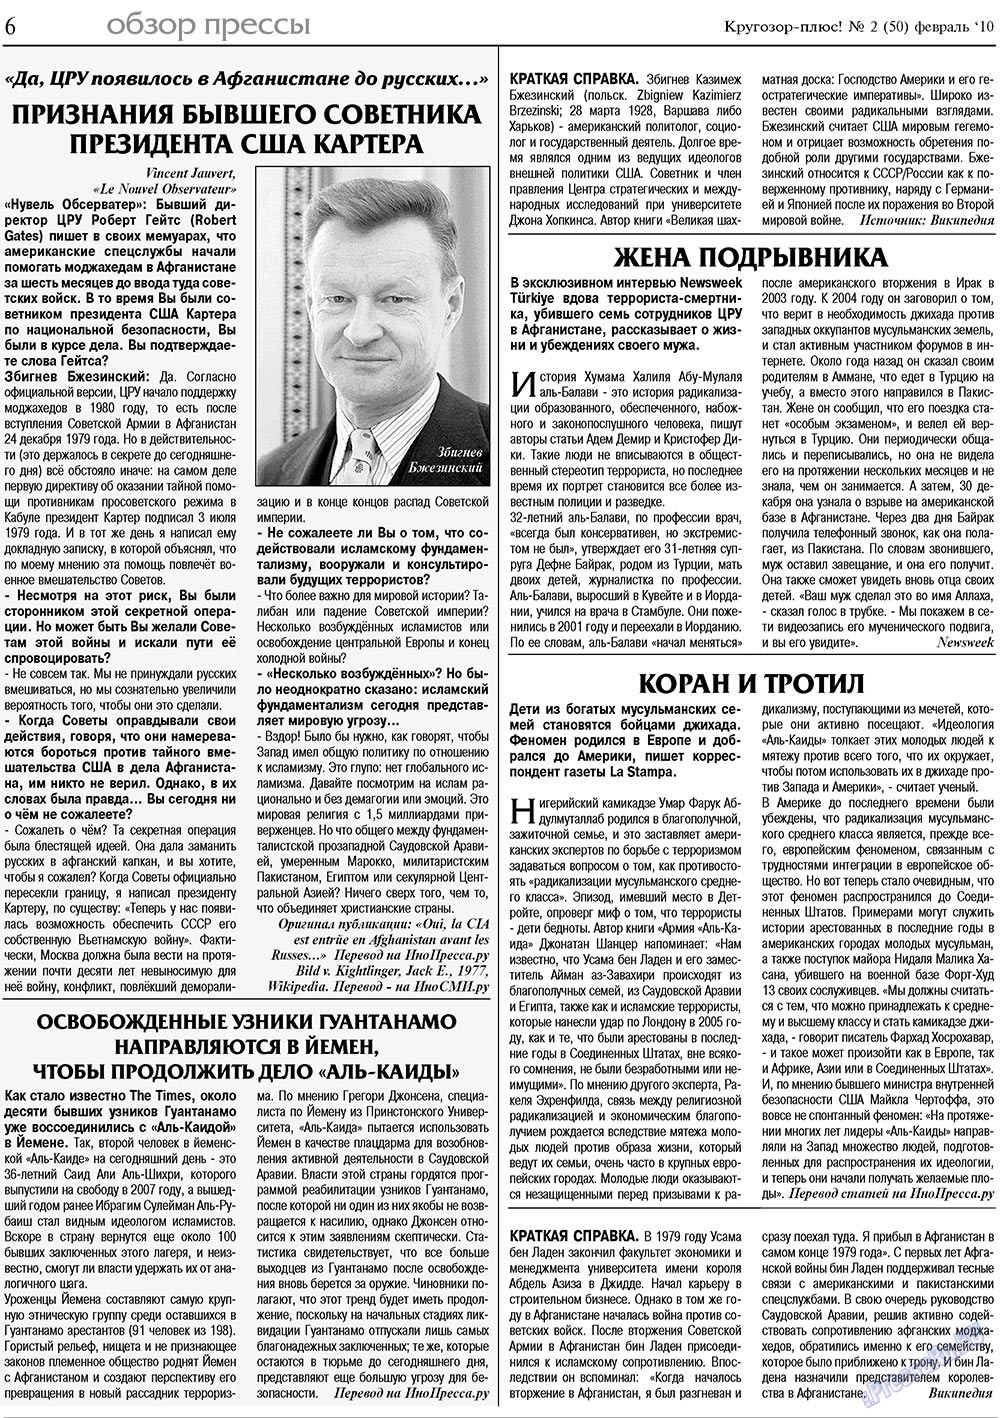 Кругозор плюс!, газета. 2010 №2 стр.8